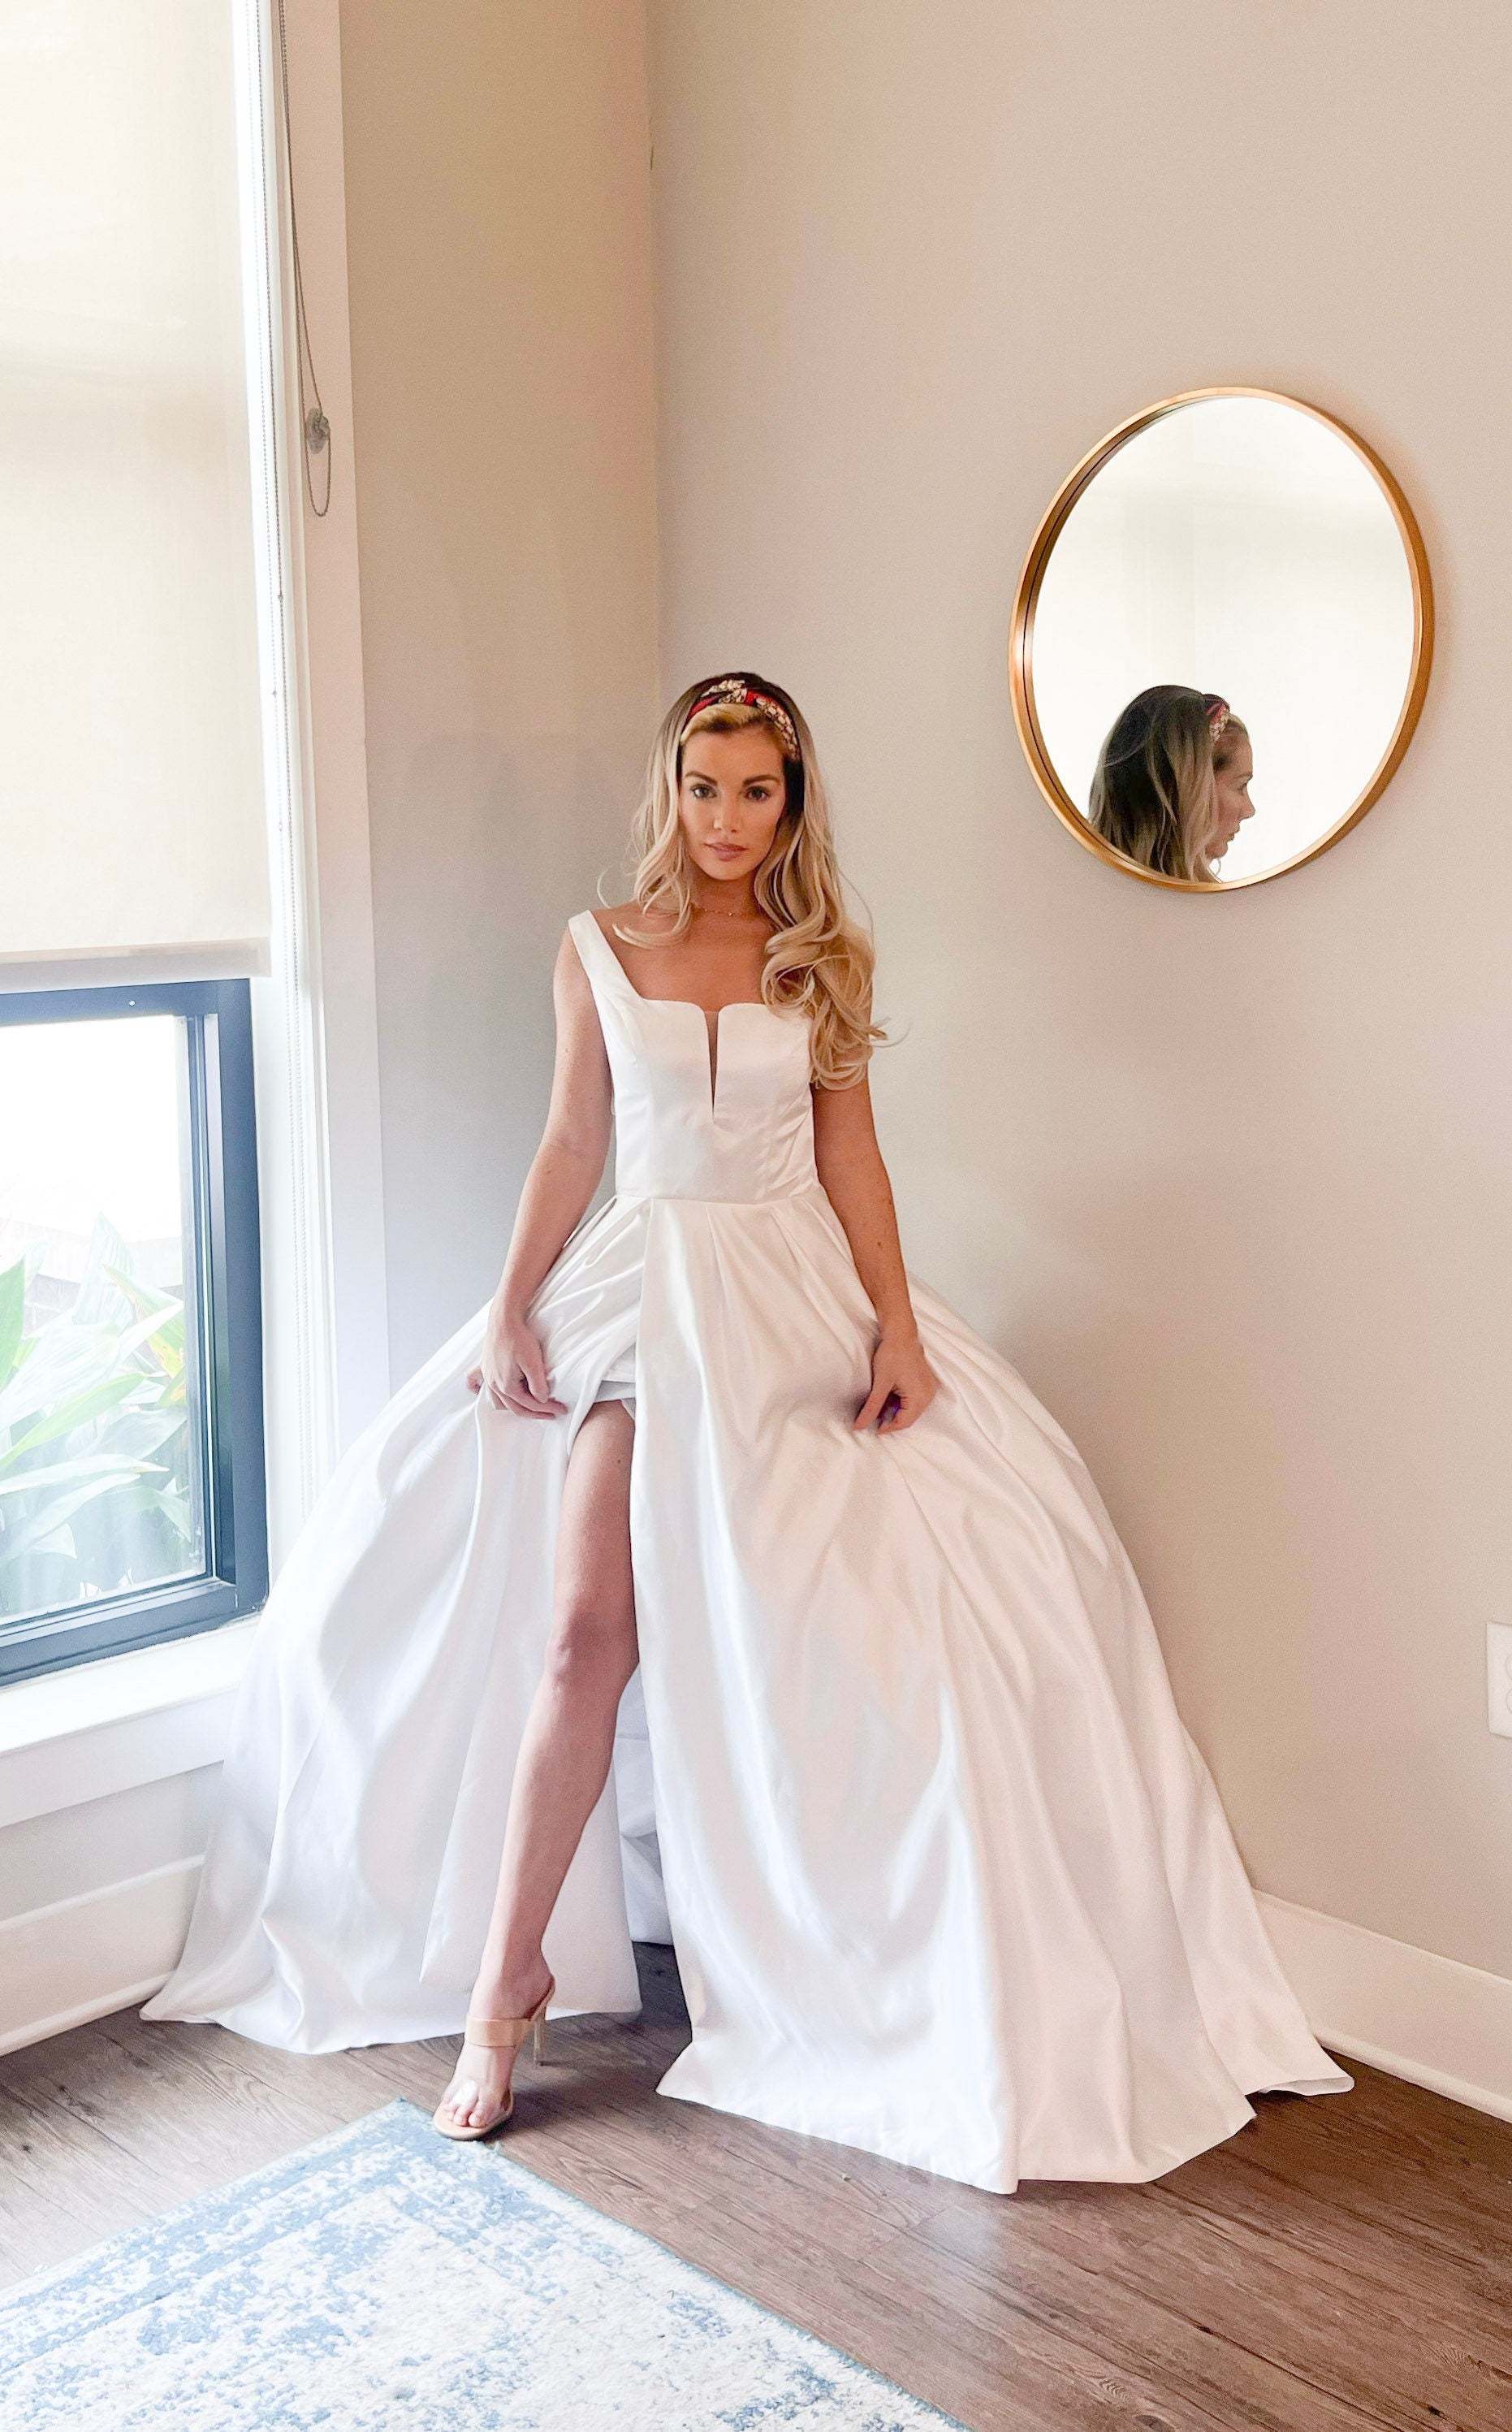 High leg slit wedding dress, sexy ballgown wedding dress with leg slit, satin wedding dress affordable